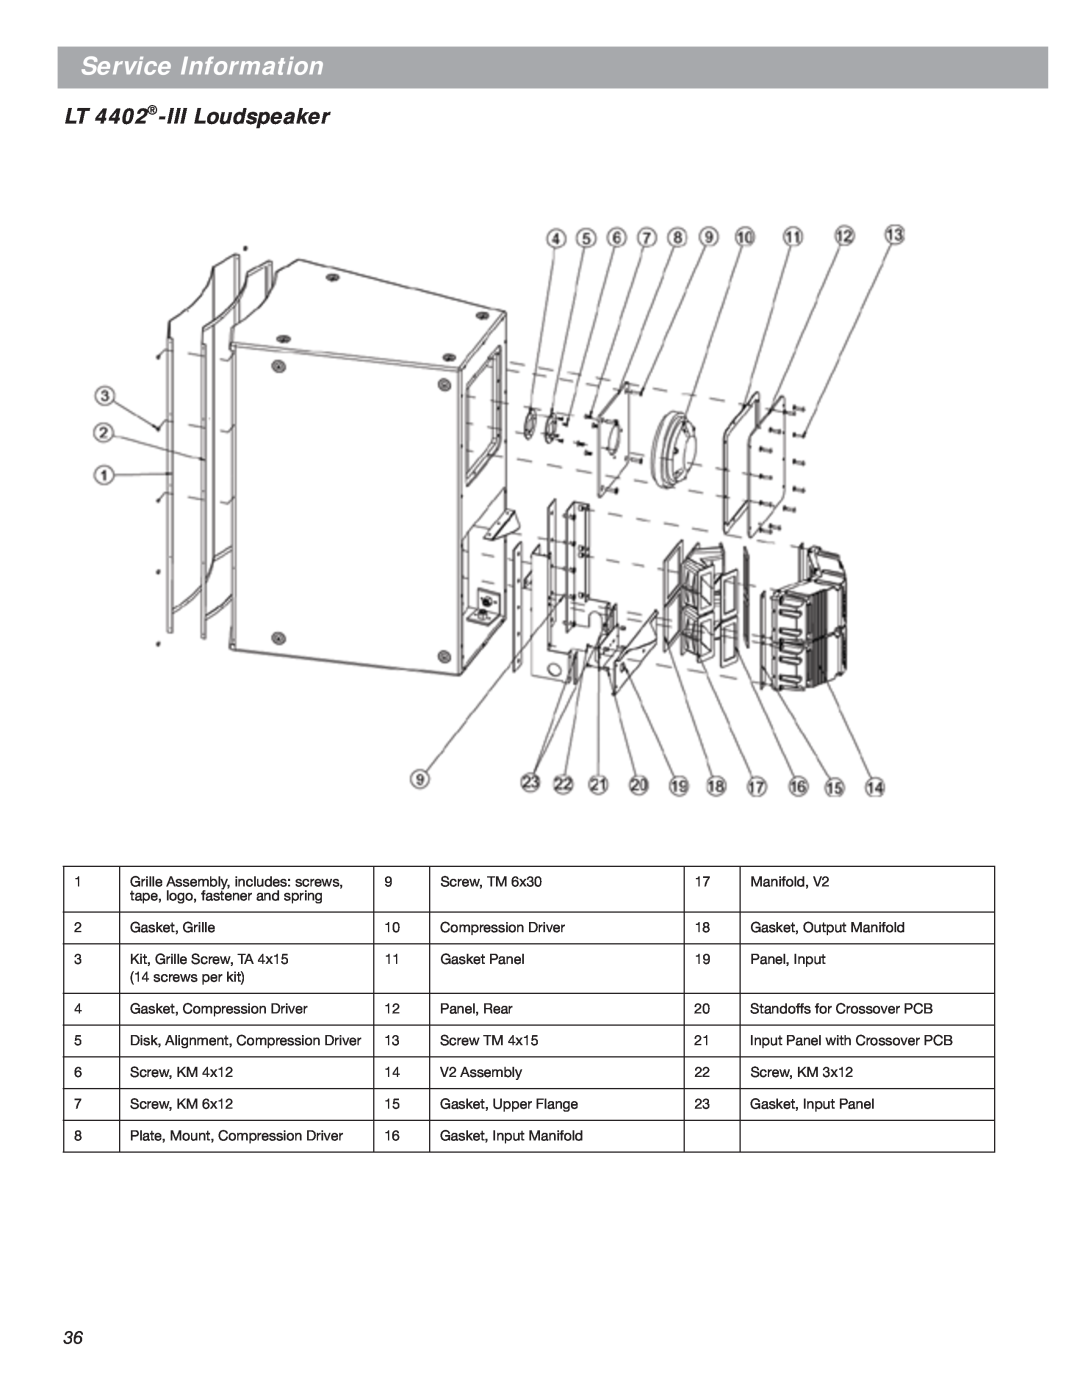 Bose LT Series III, Bose Panaray Loudspeakers manual LT 4402-IIILoudspeaker, Service Information 